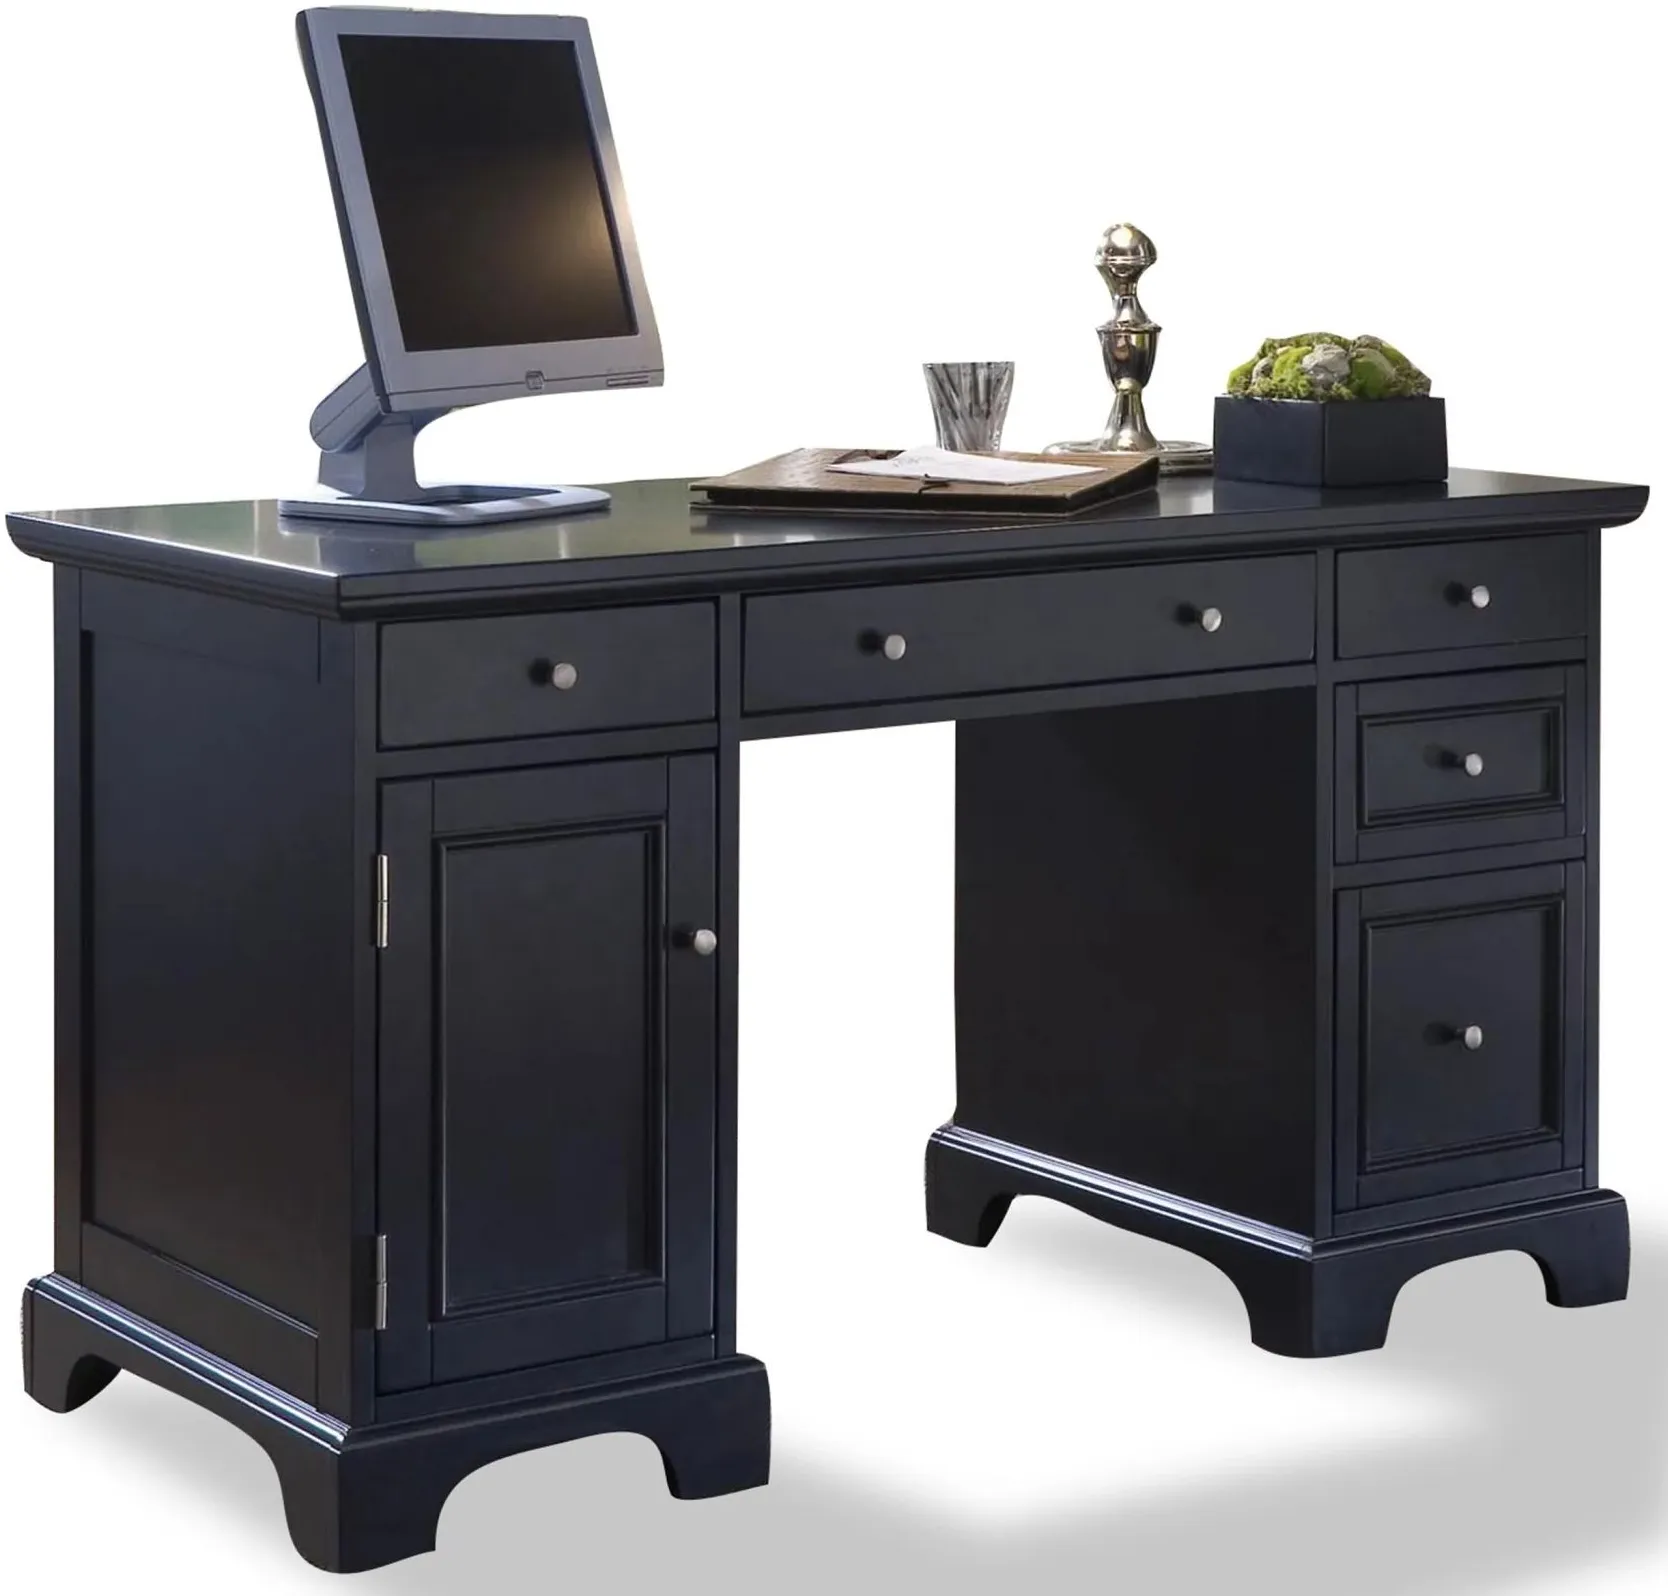 homestyles® Bedford Black Pedestal Desk